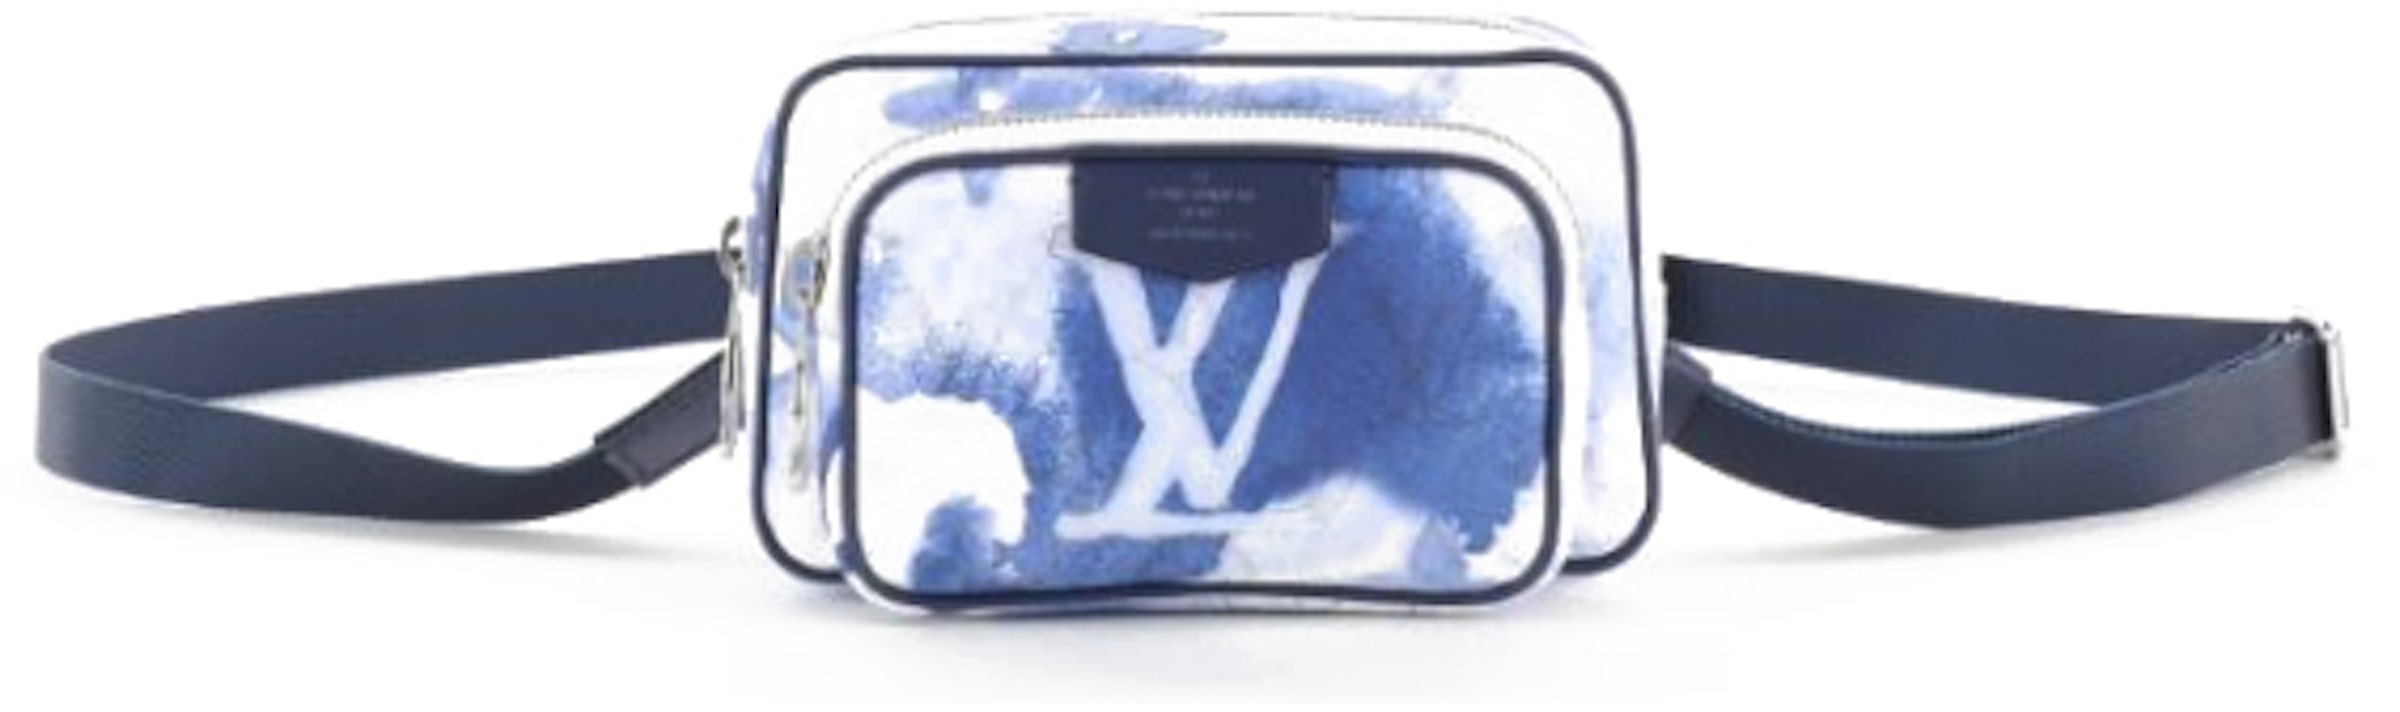 Purses, Wallets, Cases Louis Vuitton LV Outdoor Pouch Watercolor